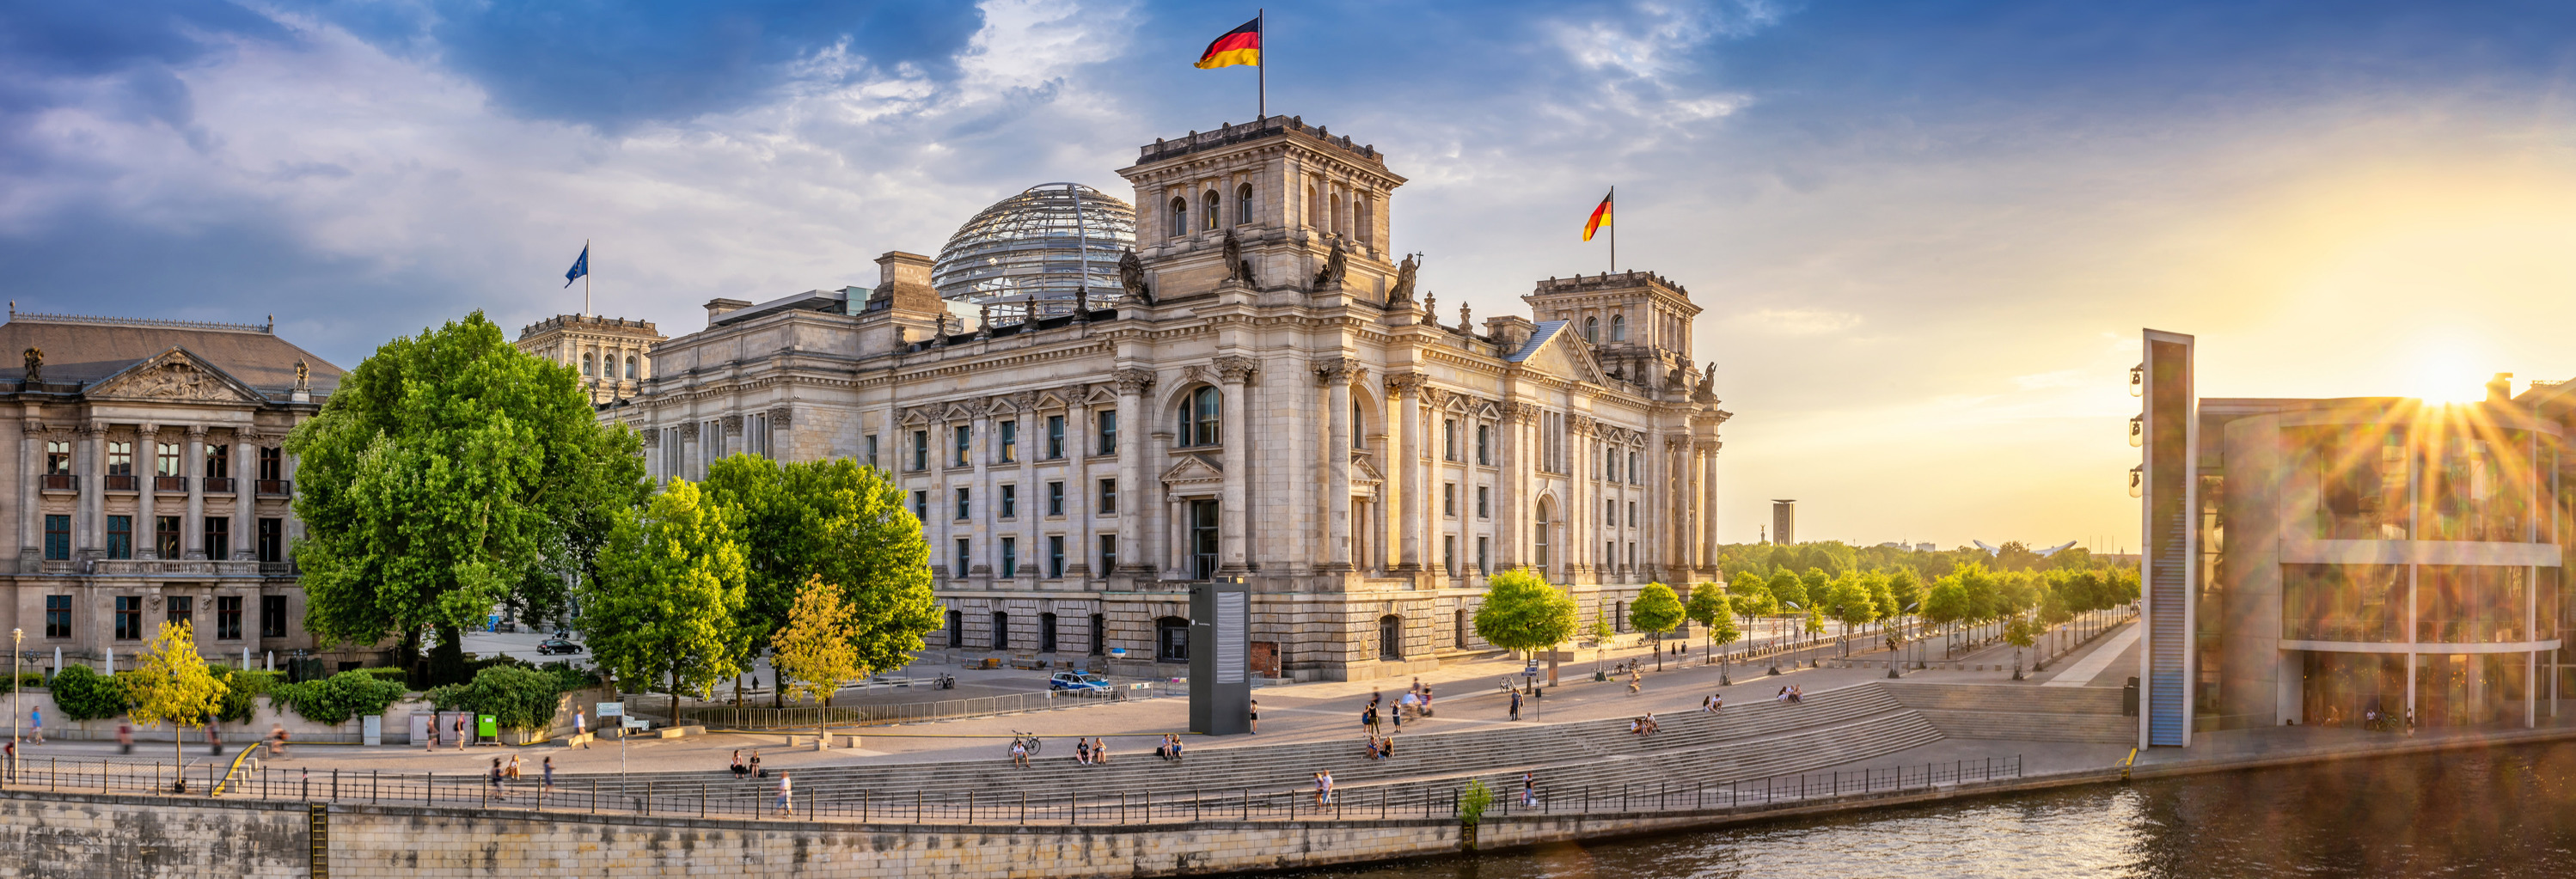 Bundestag Reichstag Gebäude